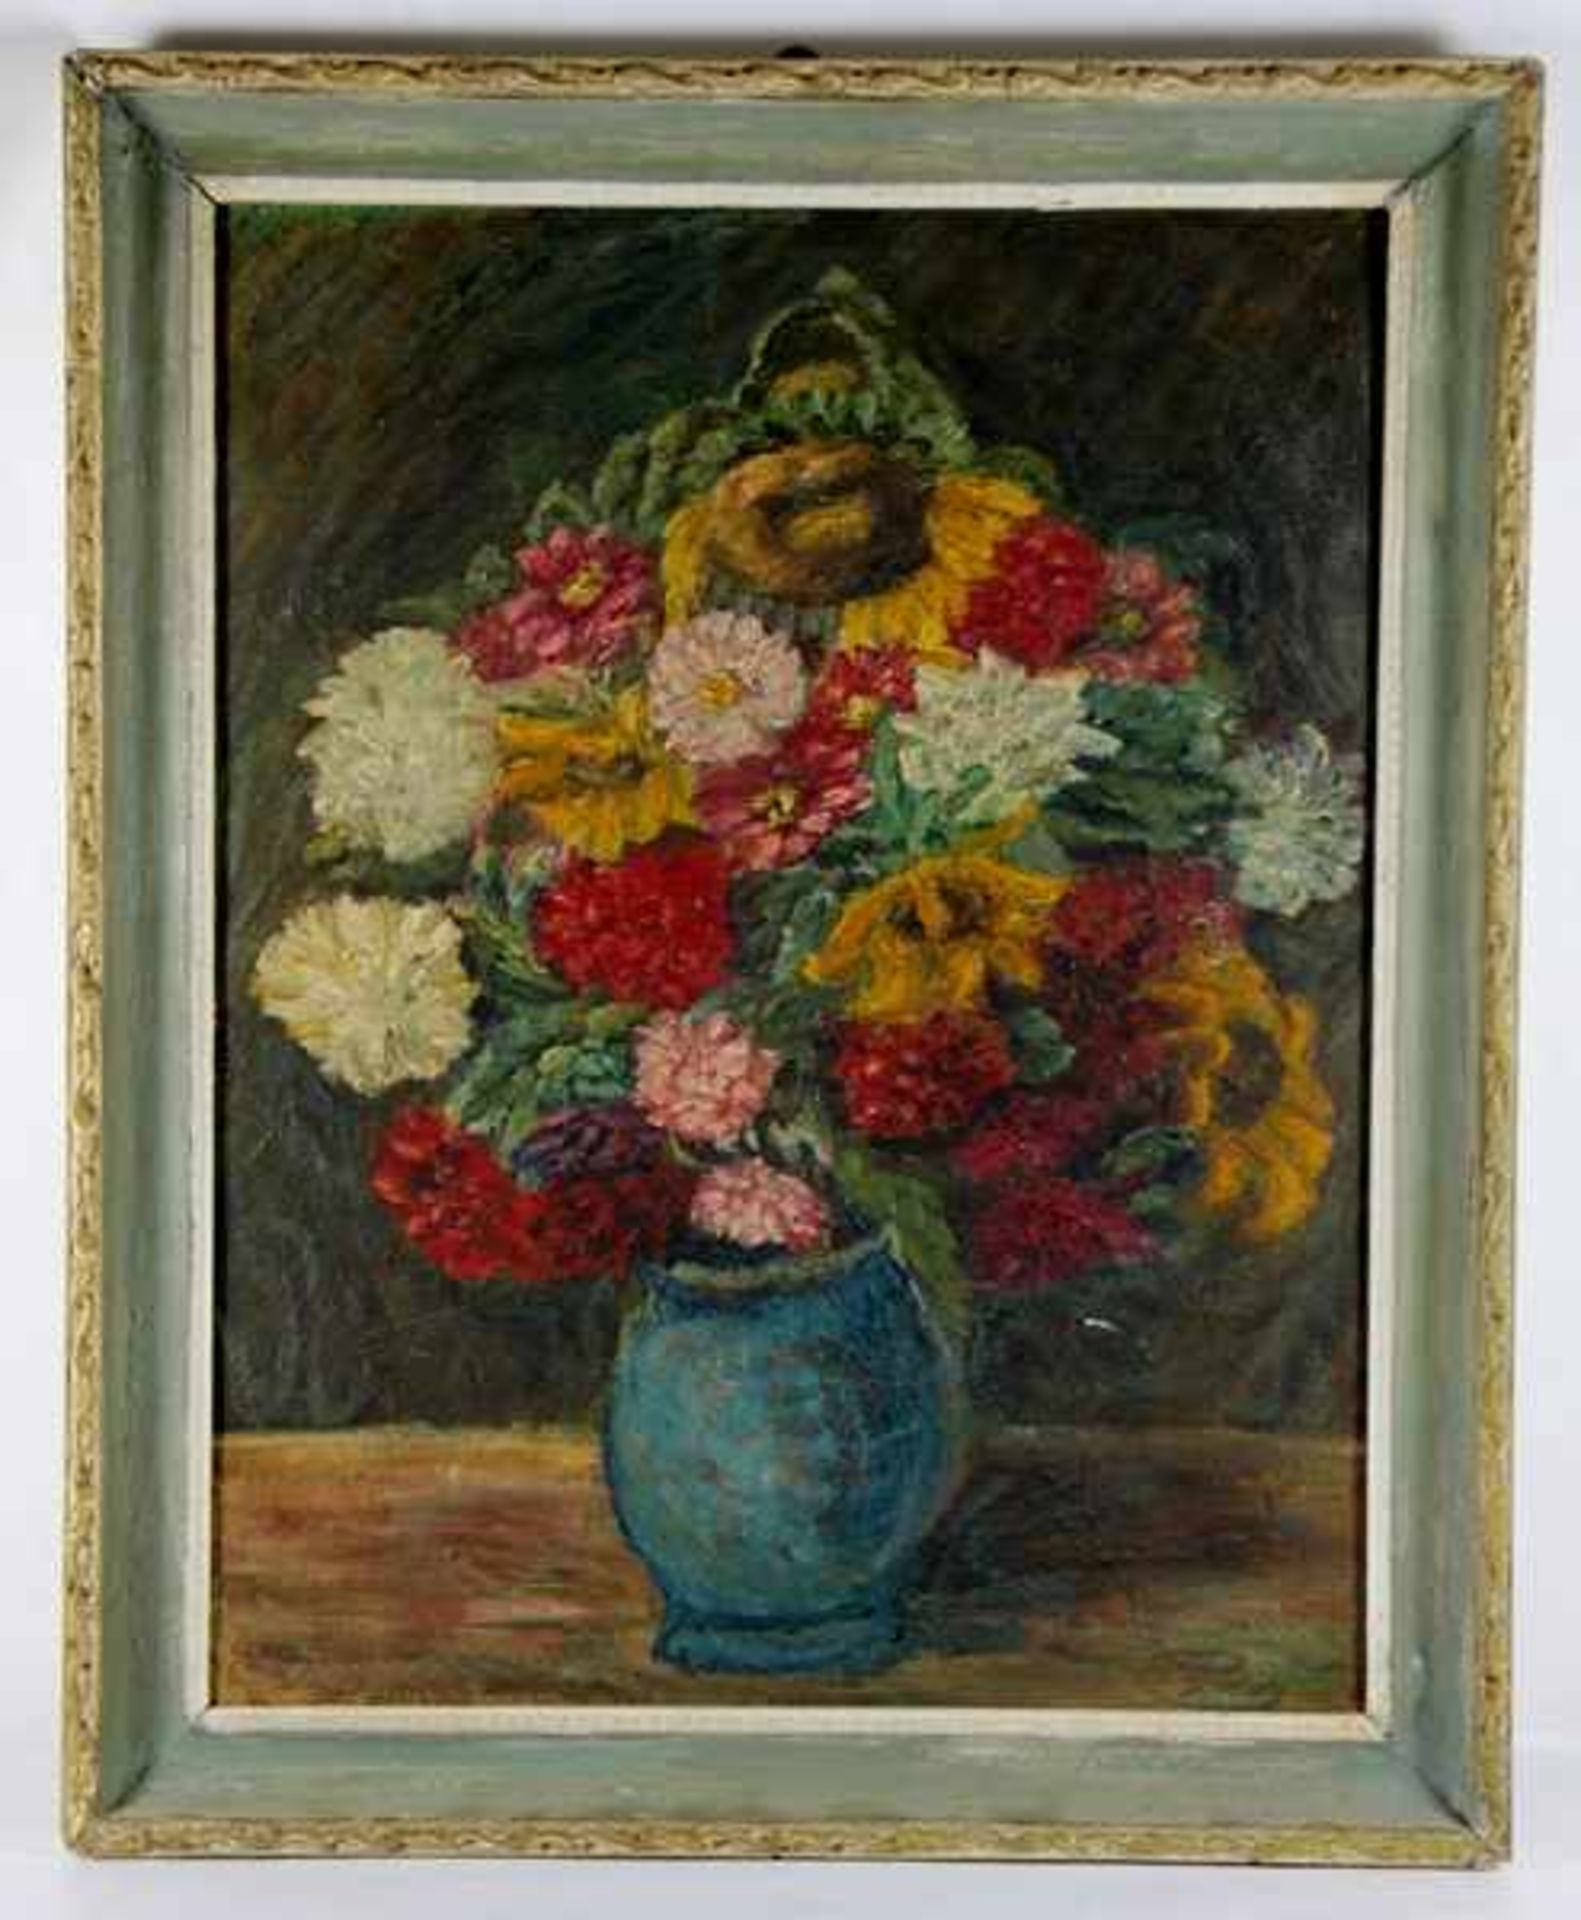 Langenstein, Karl1926-2008, Sommerblumen, Blumen in einer Vase, gestischer Duktus mit pastosem